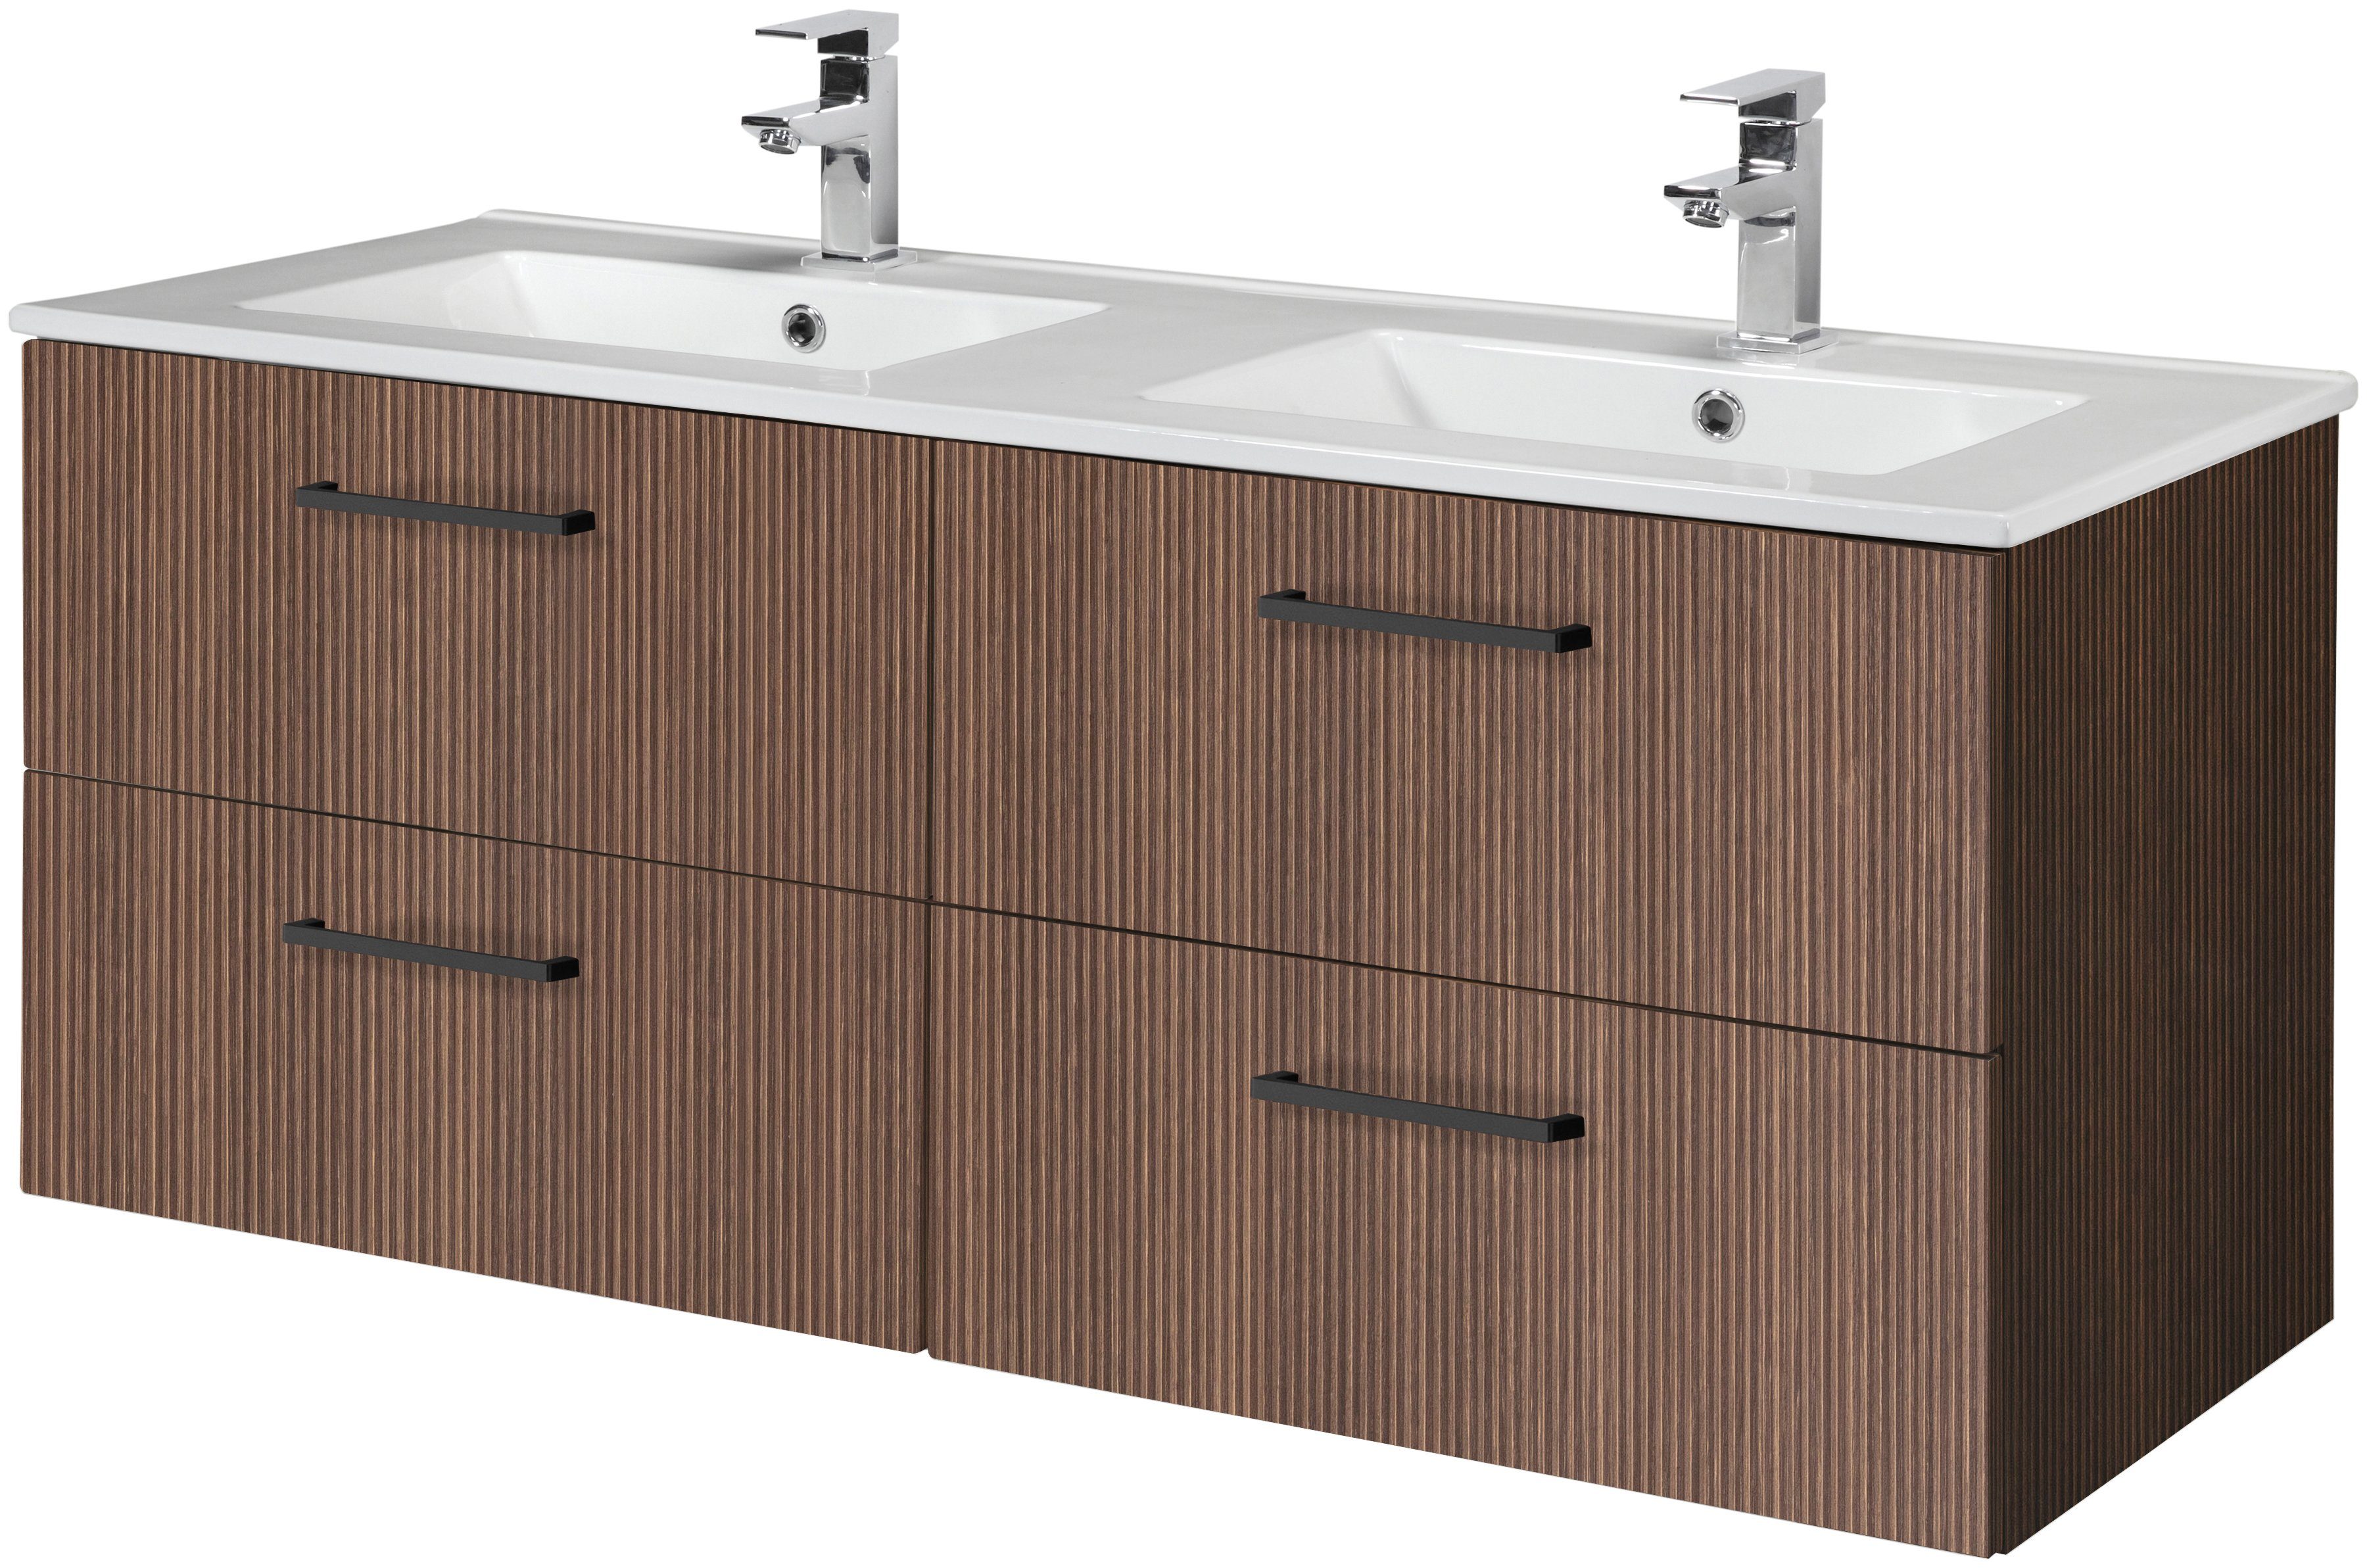 HELD MÖBEL Doppelwaschtisch Trento, Badmöbel in Breite 120 cm, 2 Doppel-Waschbecken zur Auswahl